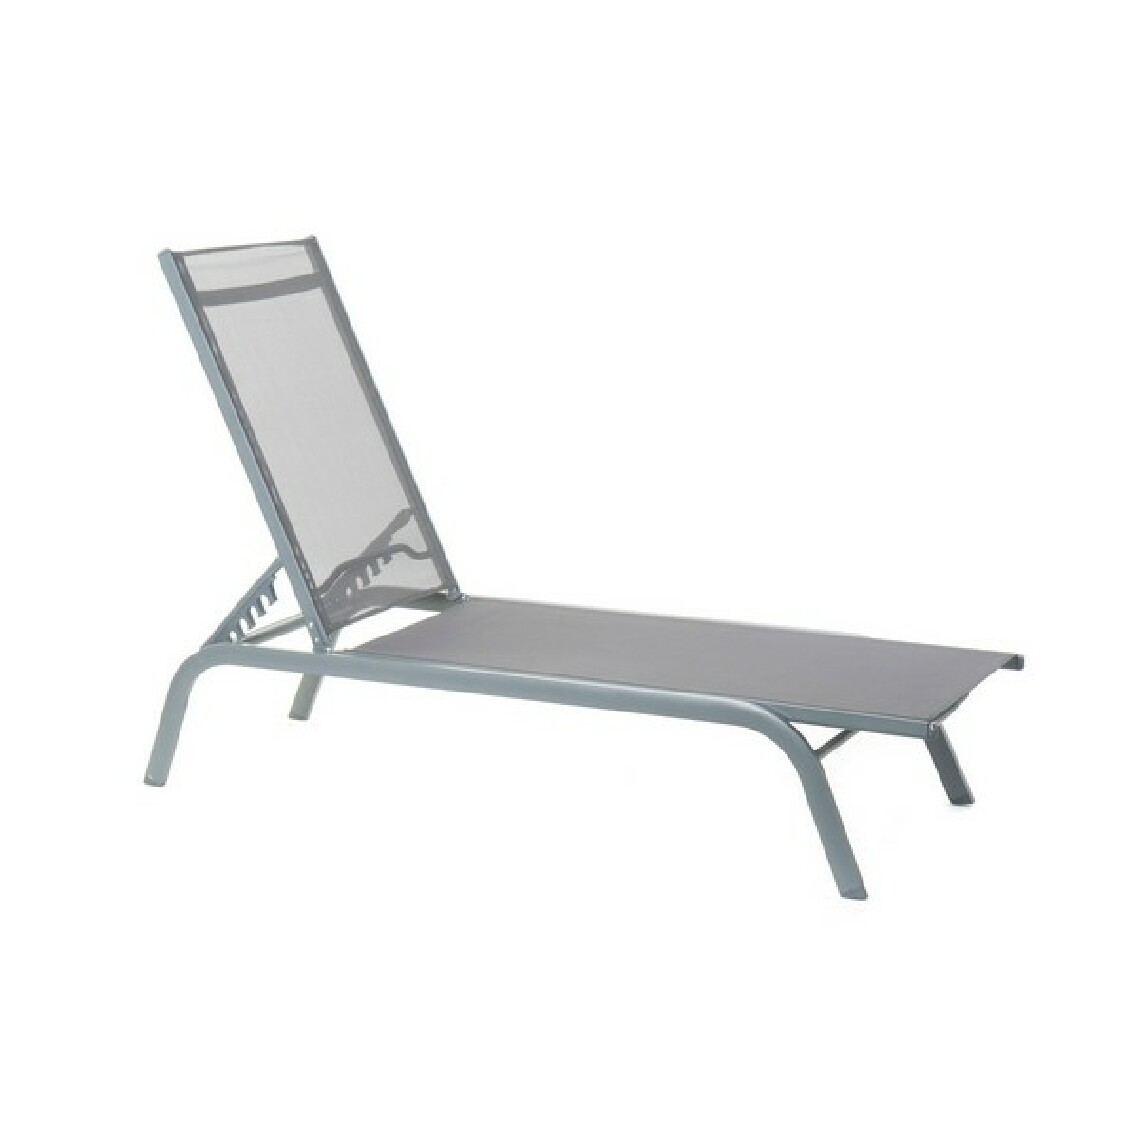 Unknown - Chaise longue DKD Home Decor inclinable Gris foncé PVC Aluminium (191 x 58 x 98 cm) - Transats, chaises longues